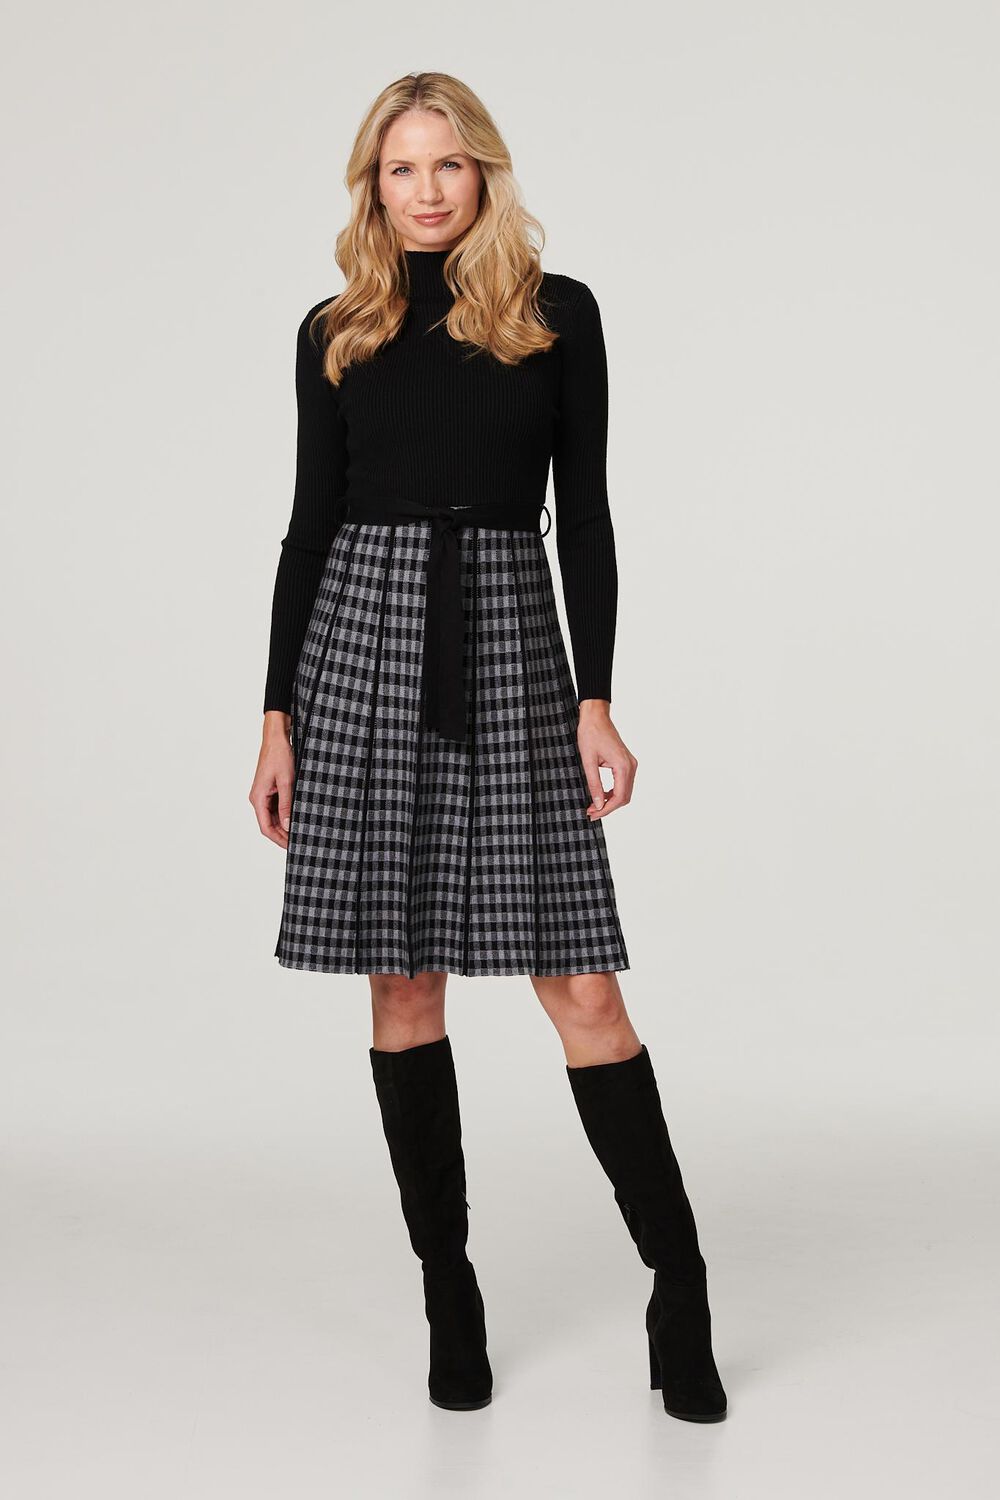 Izabel London Black - Checked High Neck Knit Dress, Size: 16